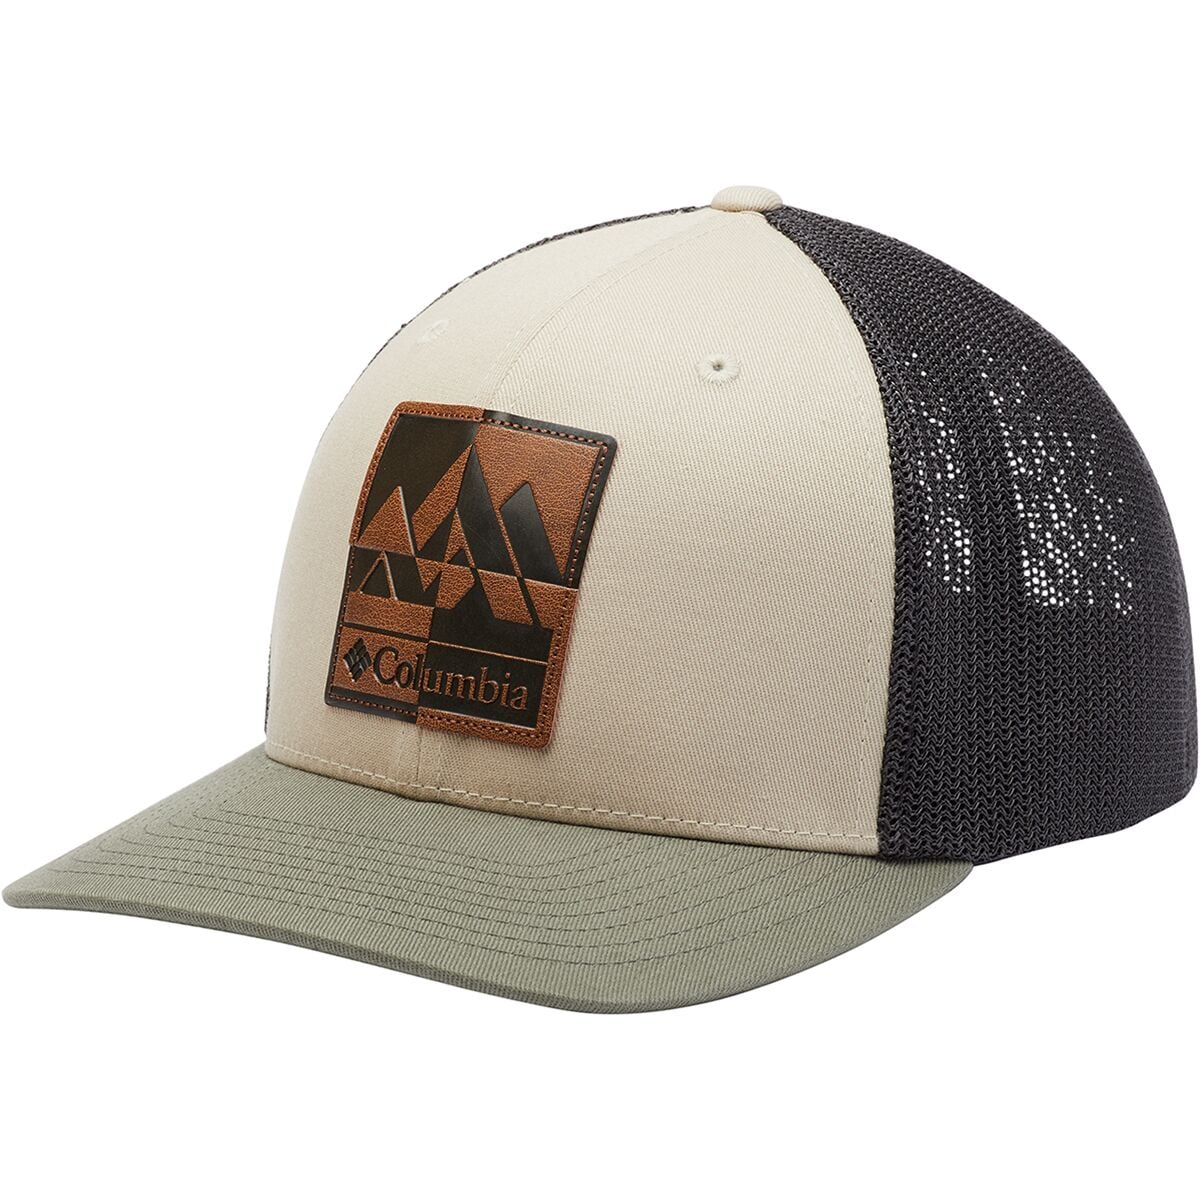 Columbia Rugged Outdoor Mesh Trucker Hat - Men's - Accessories